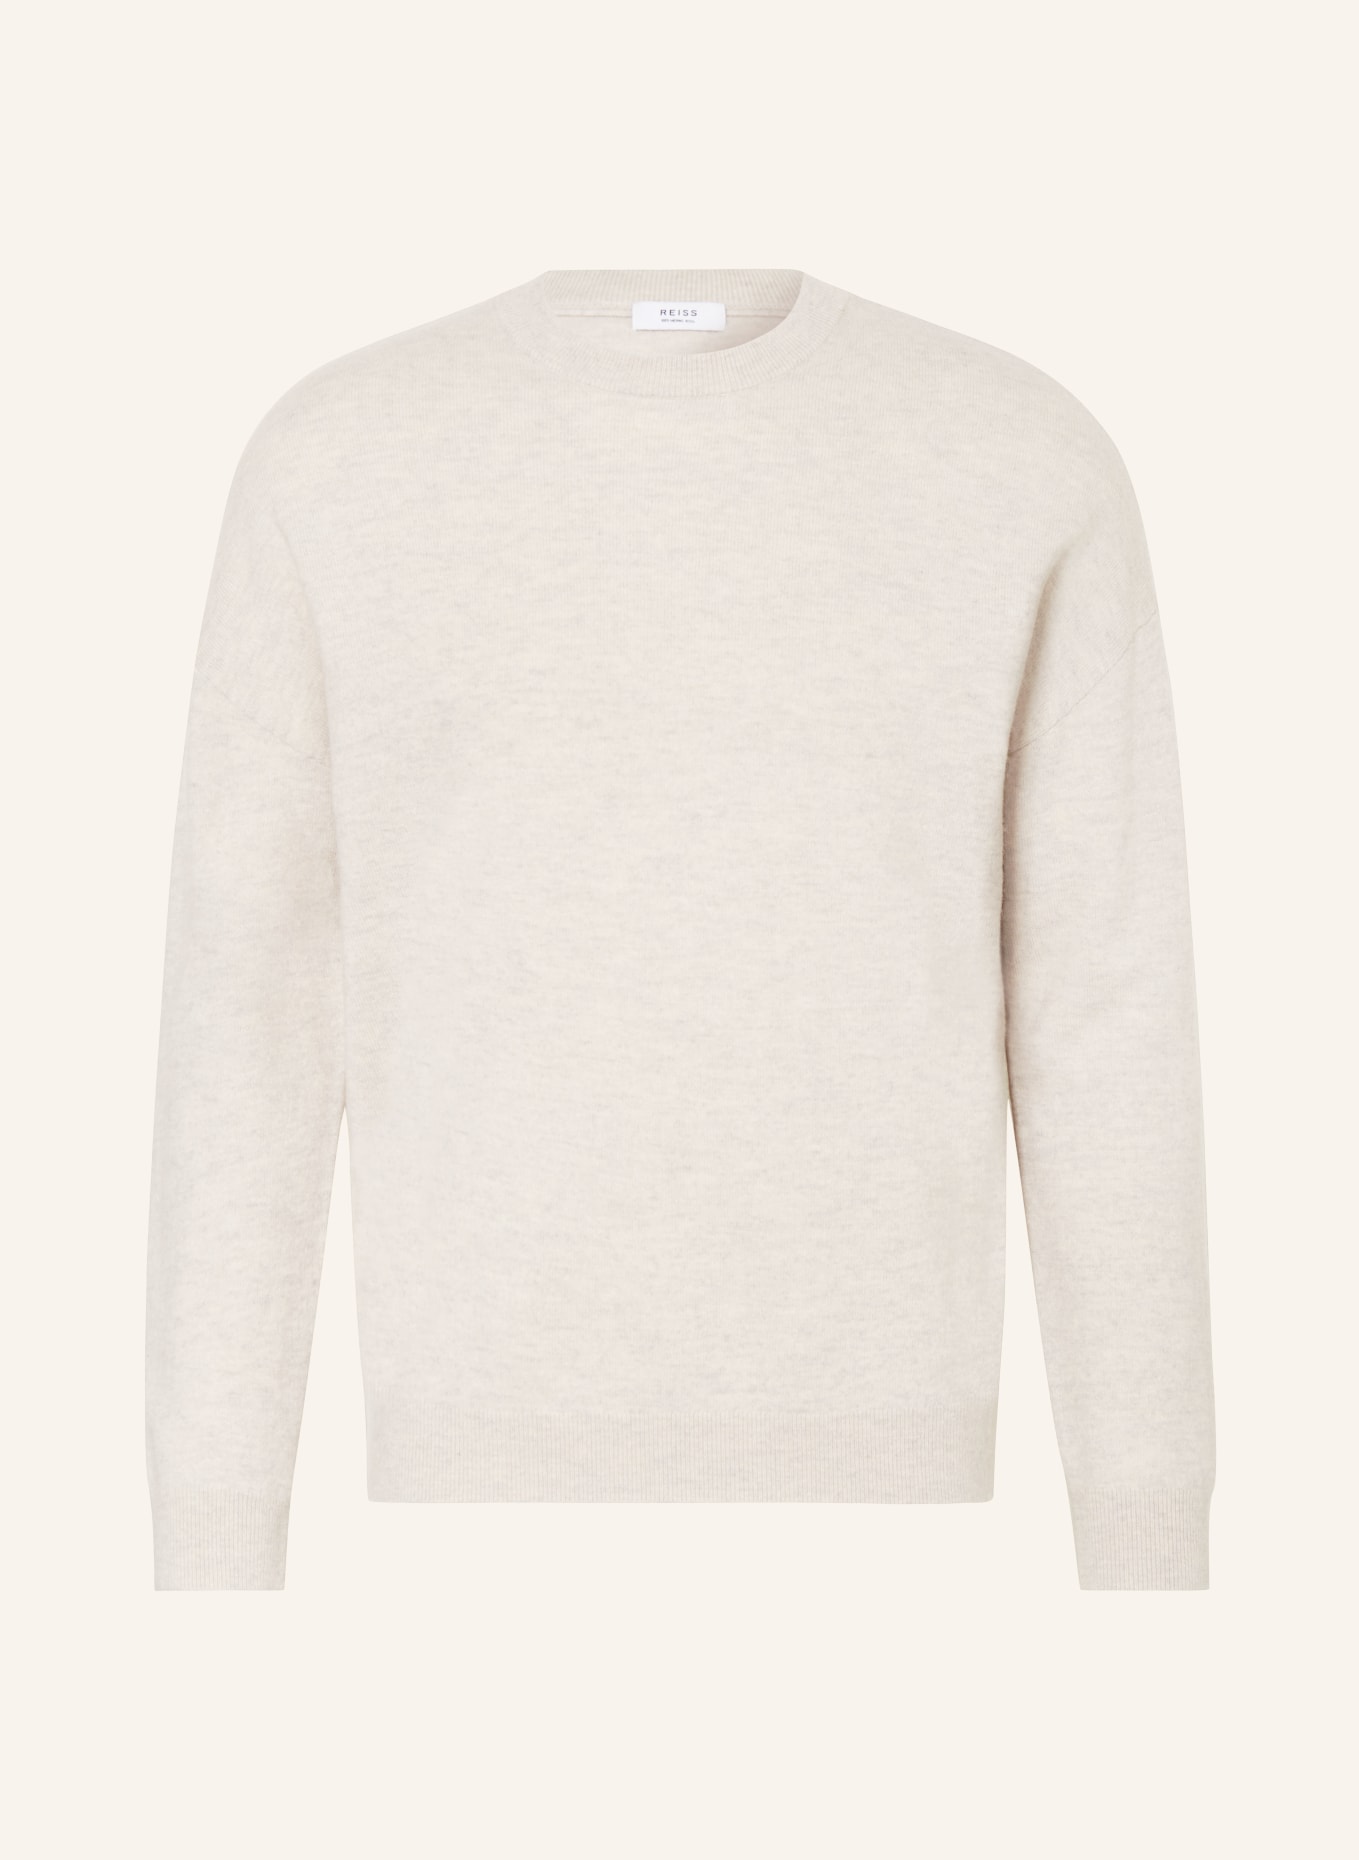 REISS Sweater PUTNEY, Color: ECRU (Image 1)